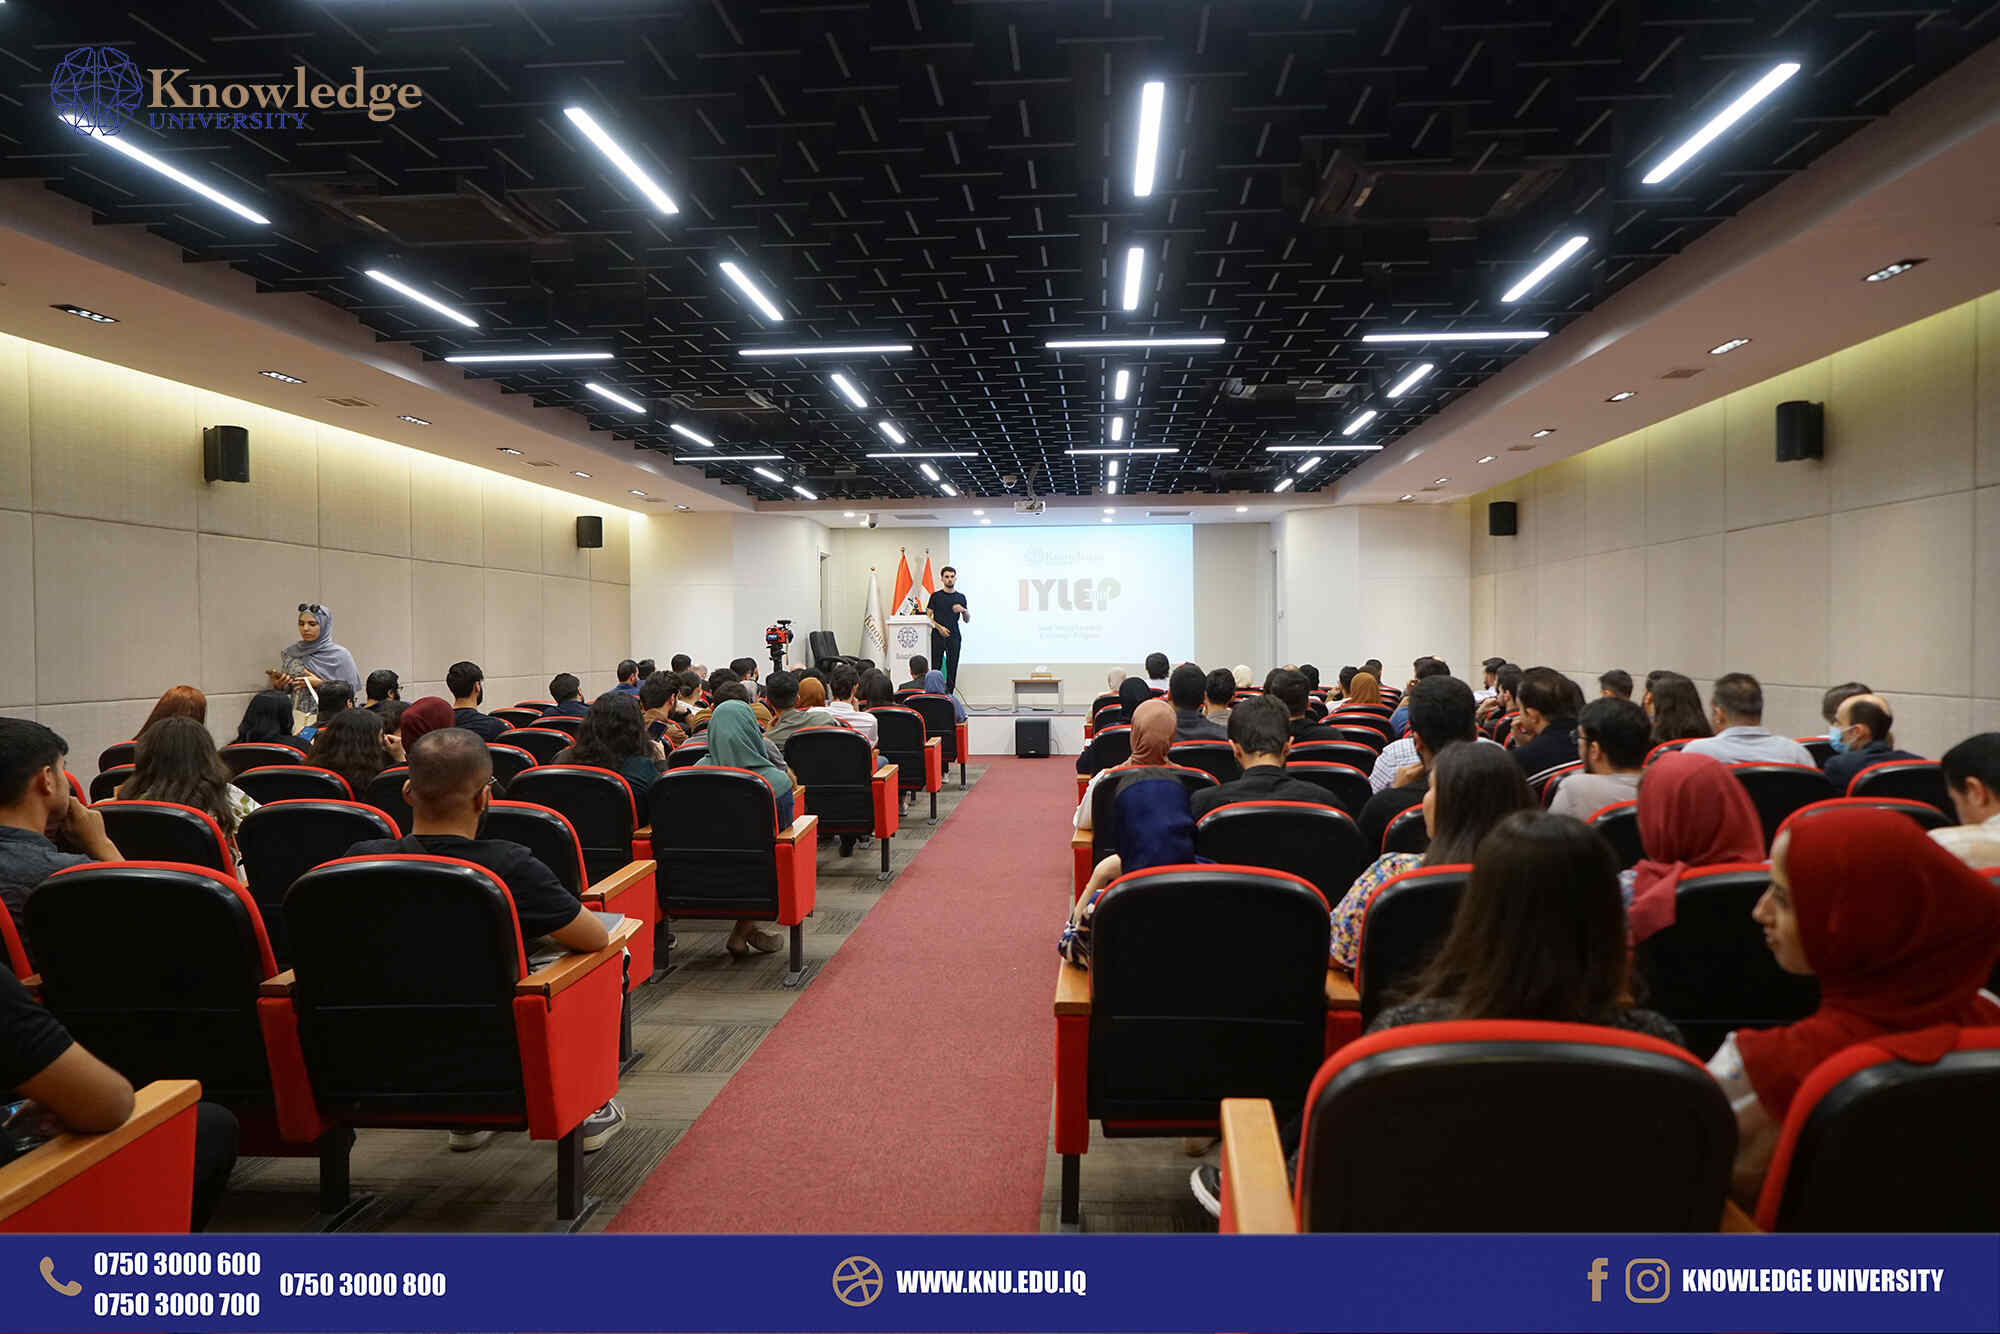 Department of Computer Sciences Hosts Workshop on IYLEP Program